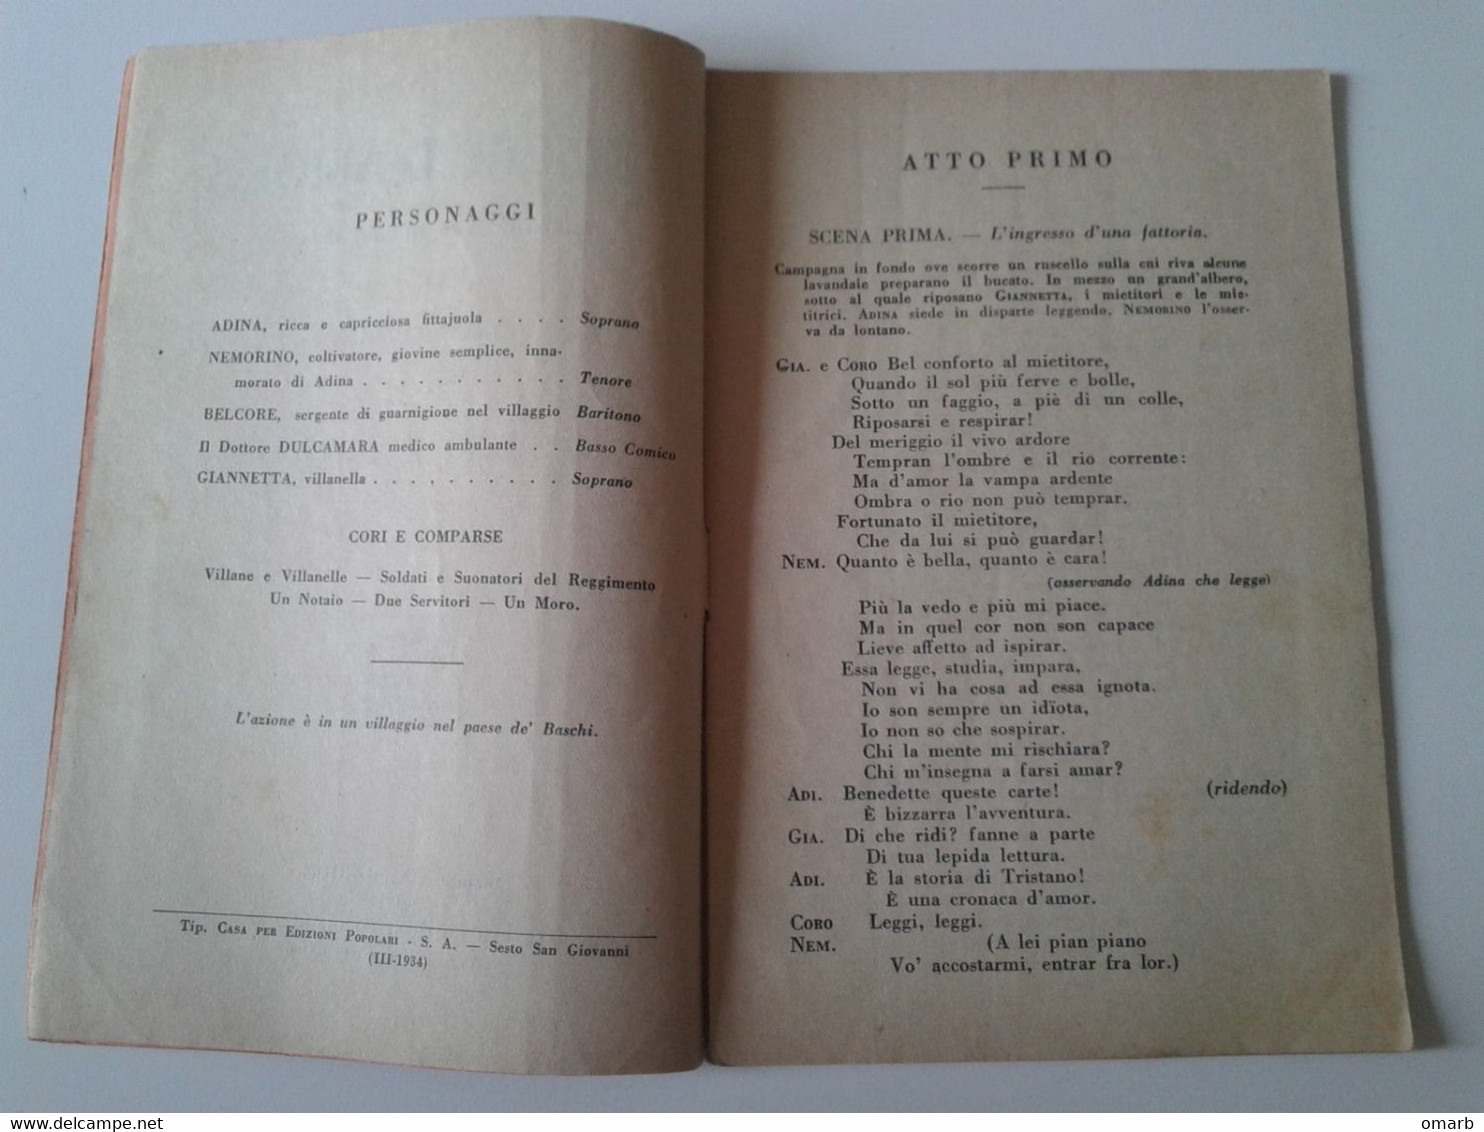 Lib461 Libretto Opera Lirica L'Elisir D'Amore Doninzetti Melodramma Felice Romani Casa Per Edizioni Popolari Barion 1934 - Teatro